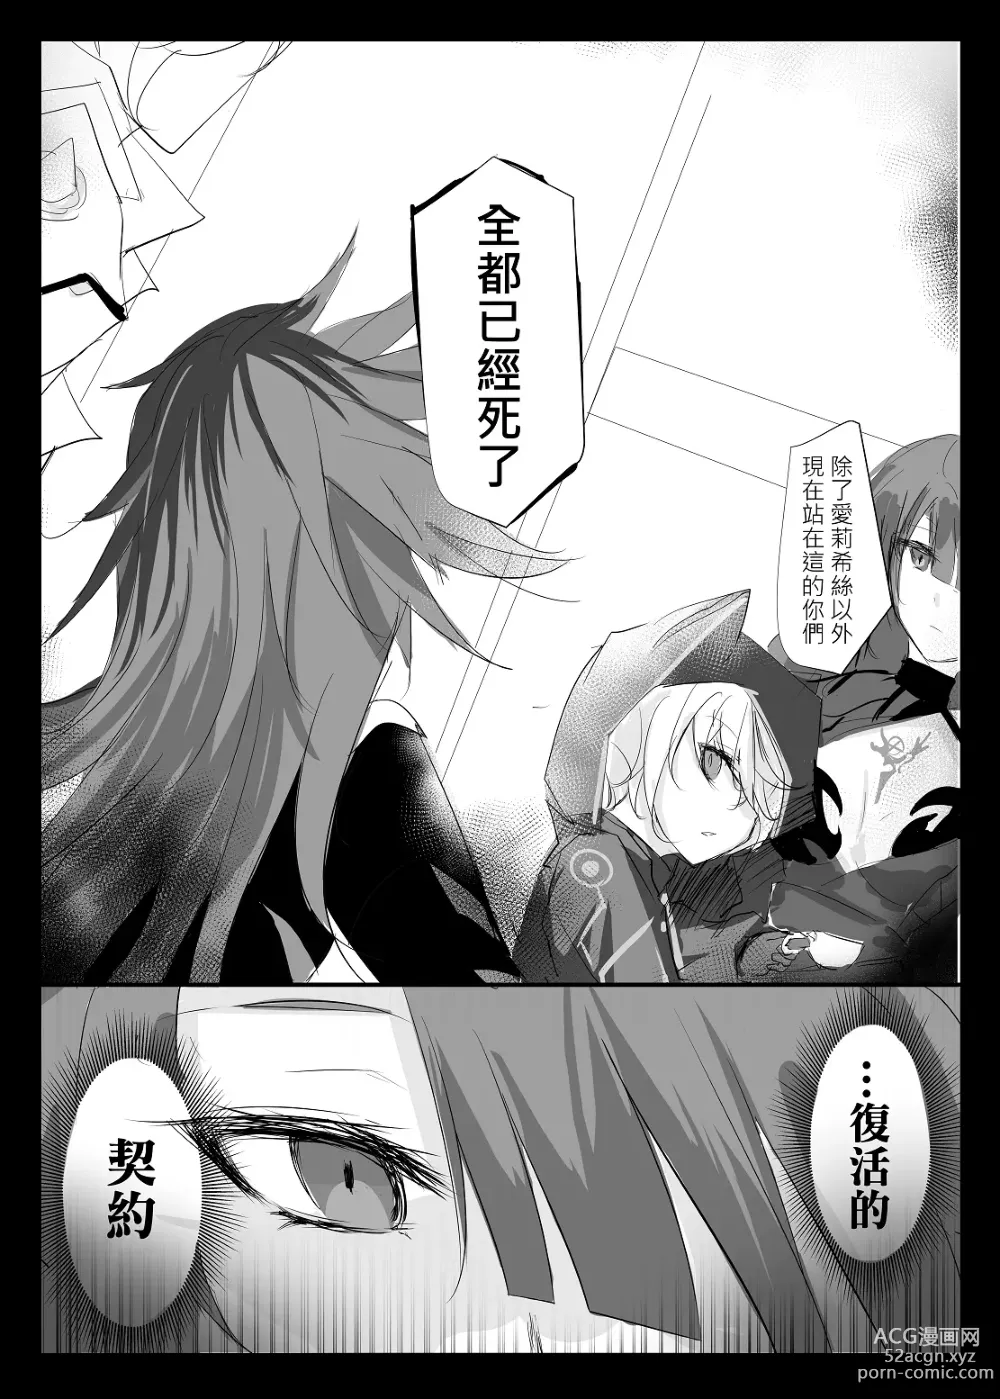 Page 8 of doujinshi ELSWORD:TYPE-V (decensored)